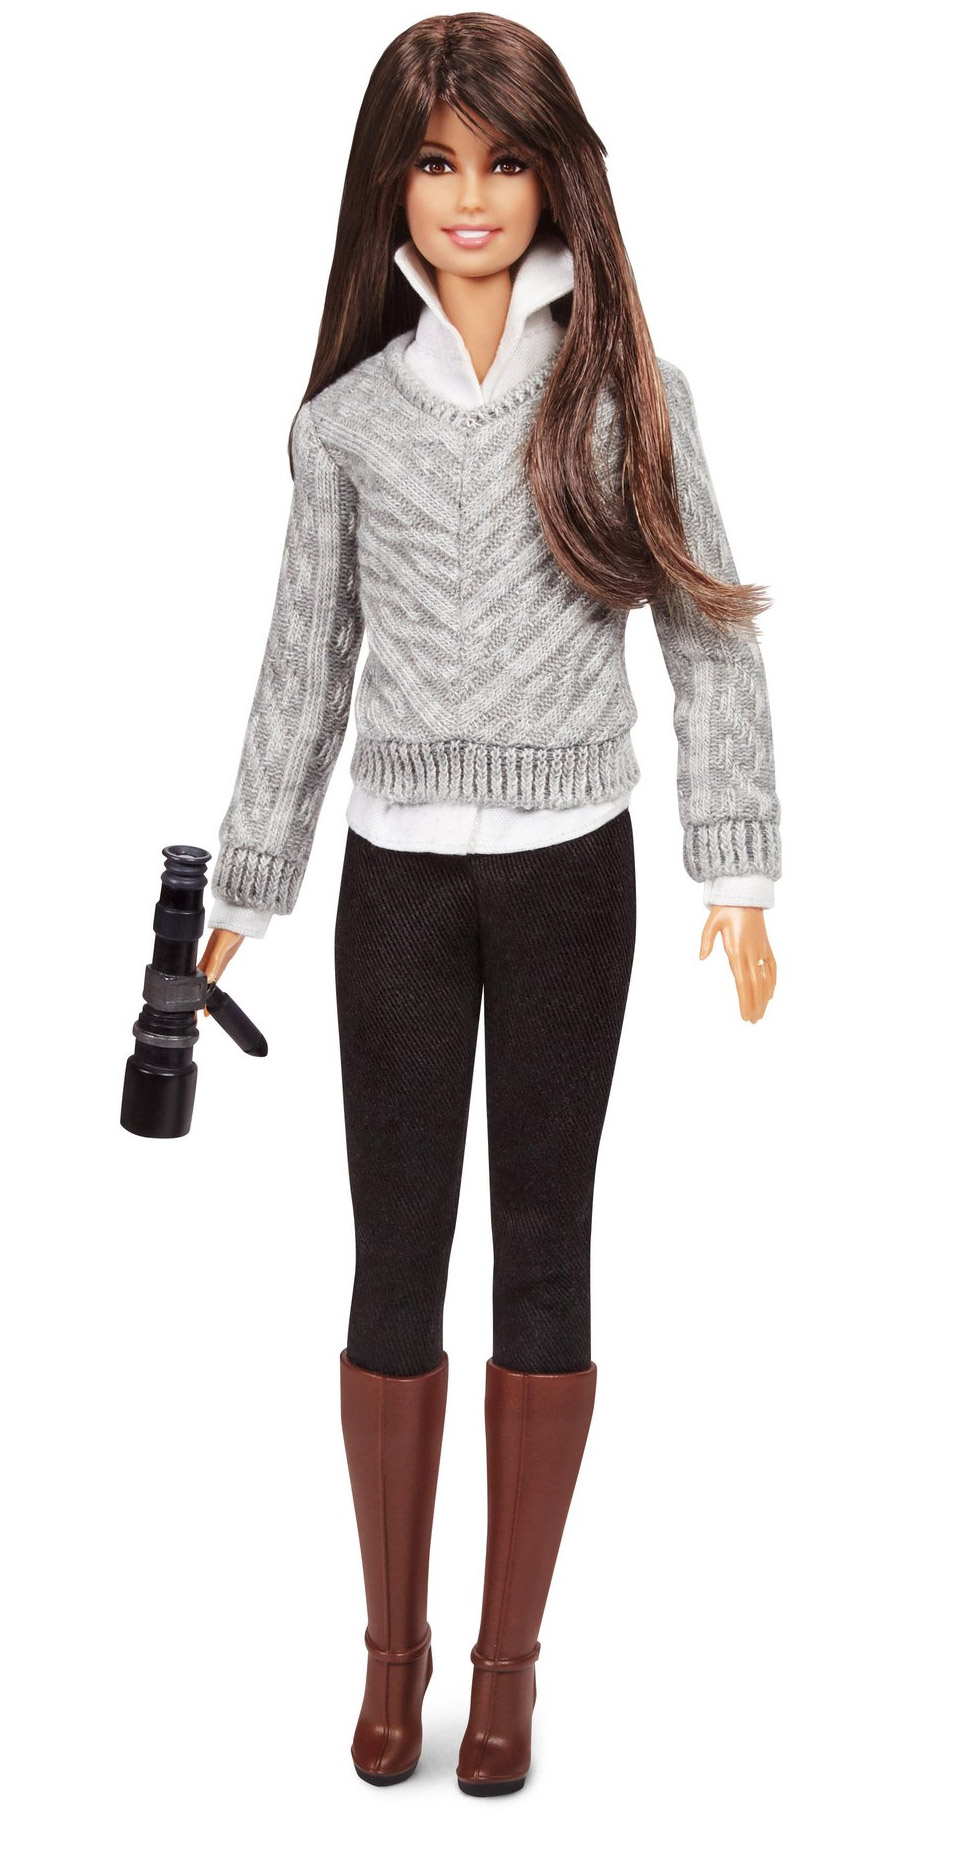 Barbie lança bonecas em homenagem a mulheres inspiradoras - 2